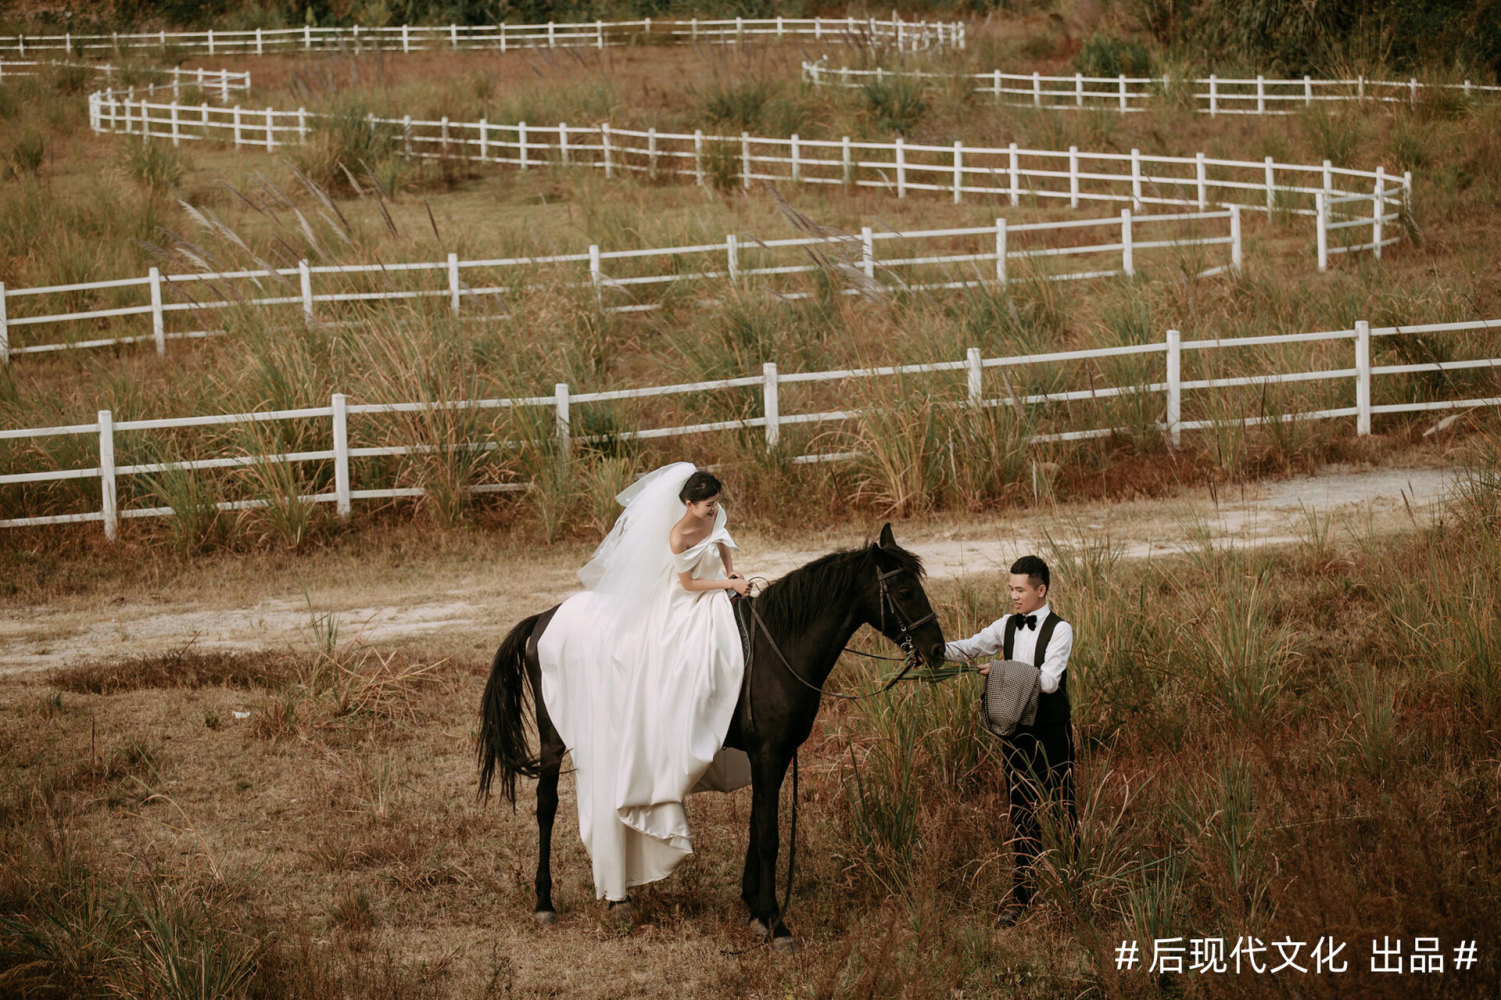 我的森系骑马婚纱照氛围感绝了出片率 - 哔哩哔哩